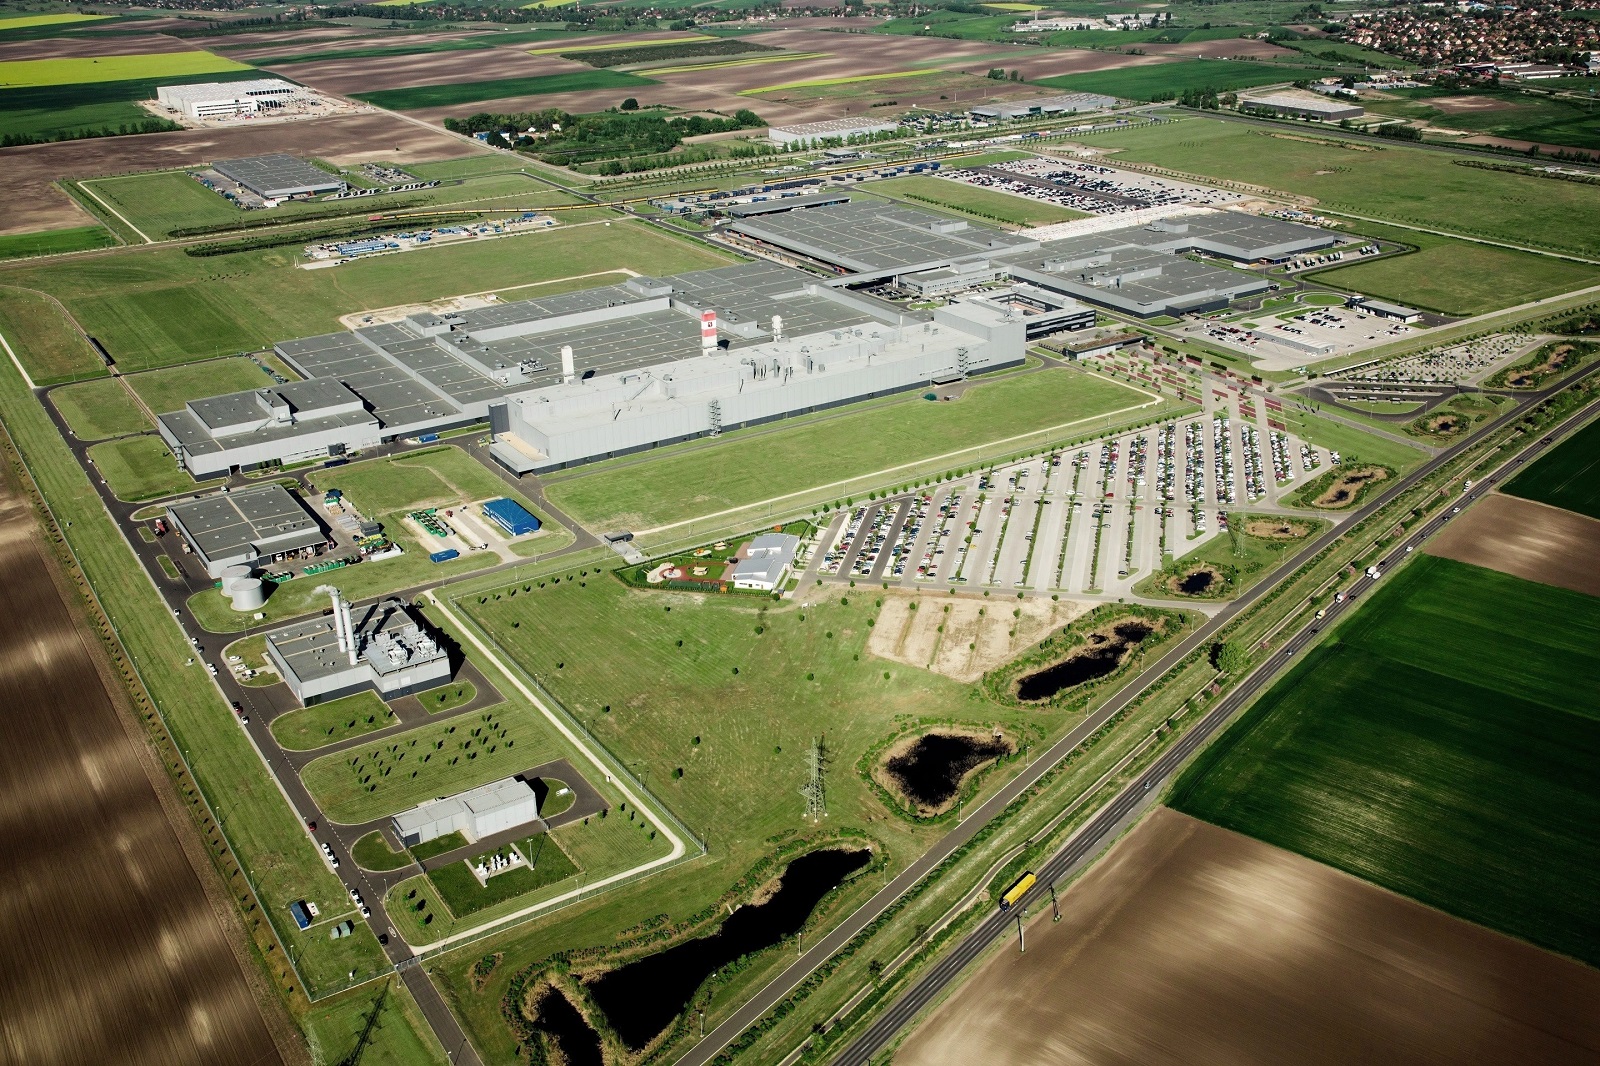 Концерн Daimler построит второй завод Mercedes в Венгрии